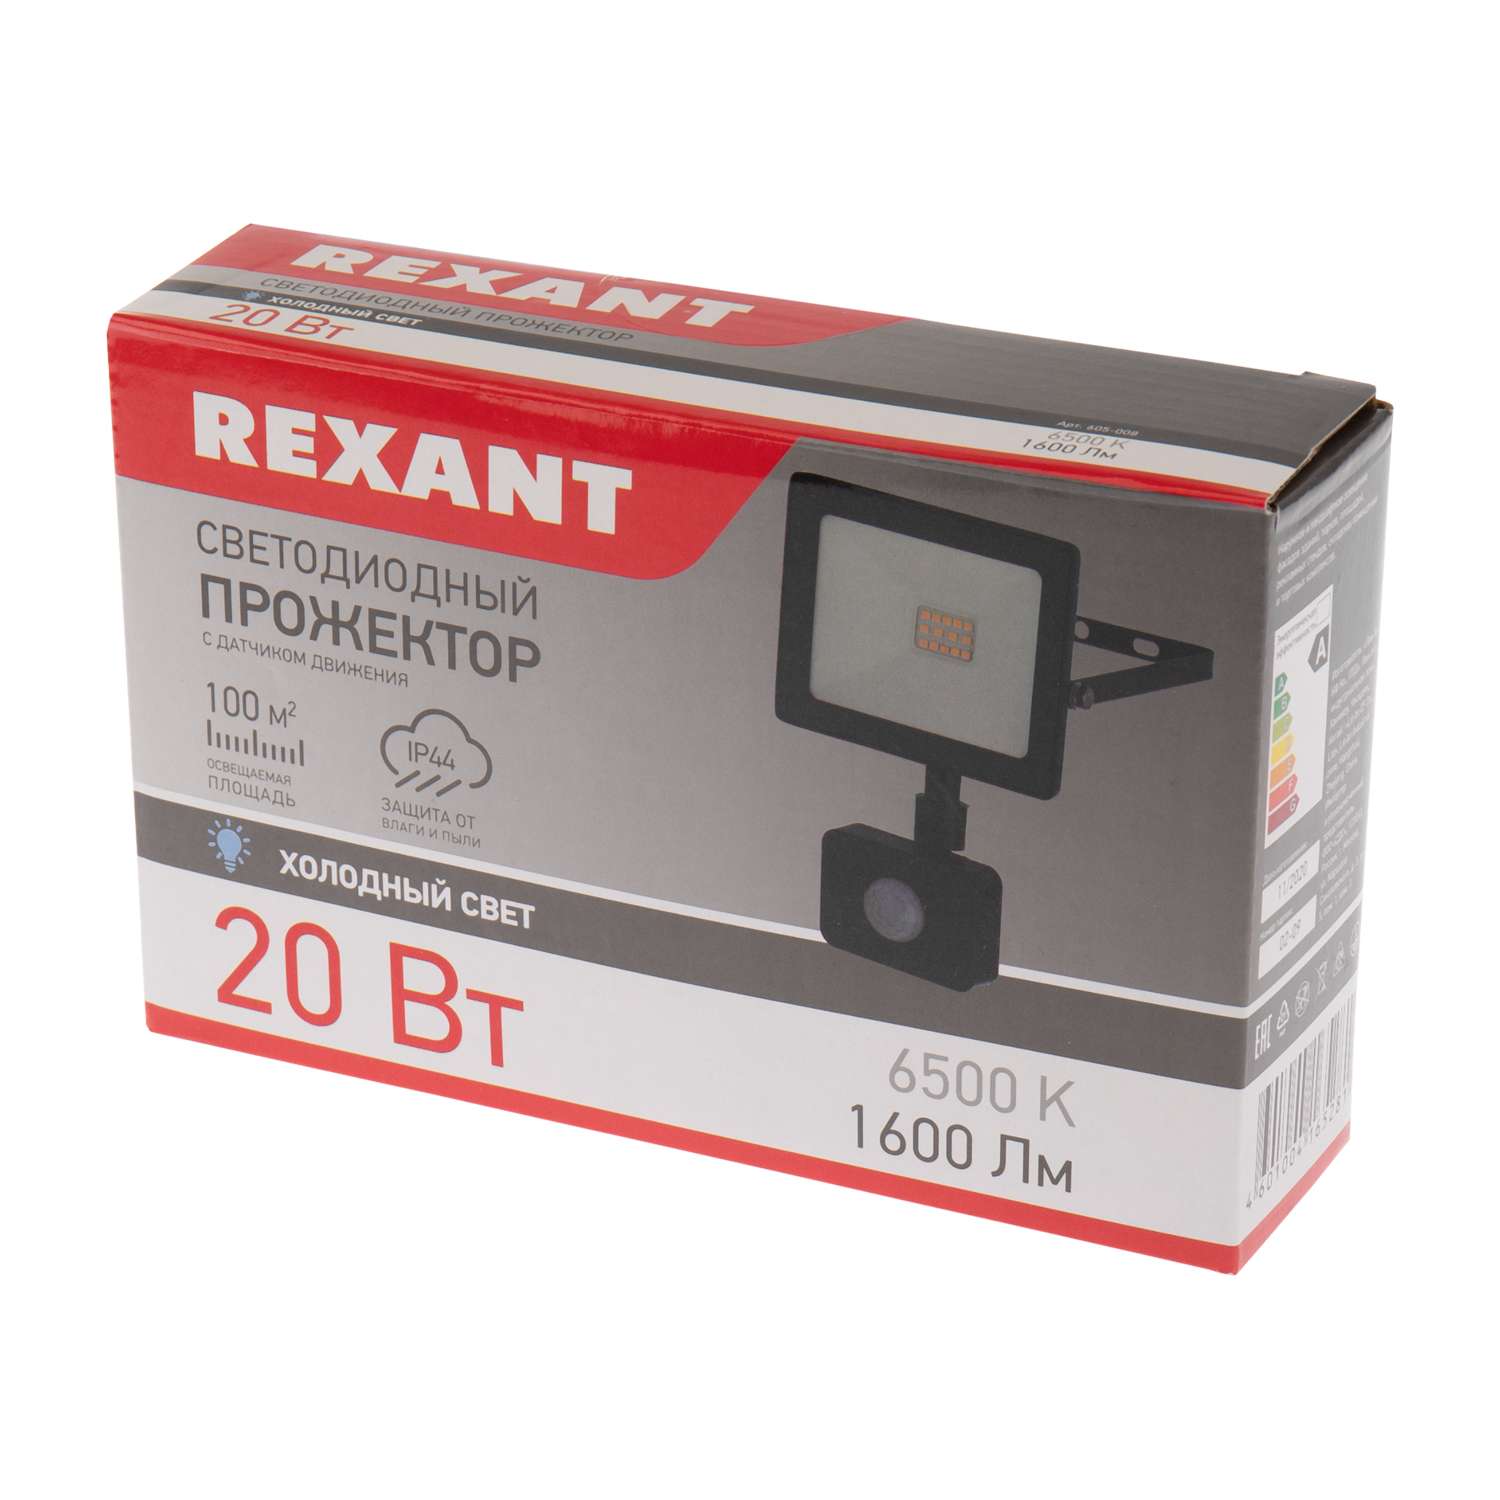 Прожектор REXANT 20 Вт светодиодный 1600Лм 6500К холодный свет с датчиком движения - фото 4